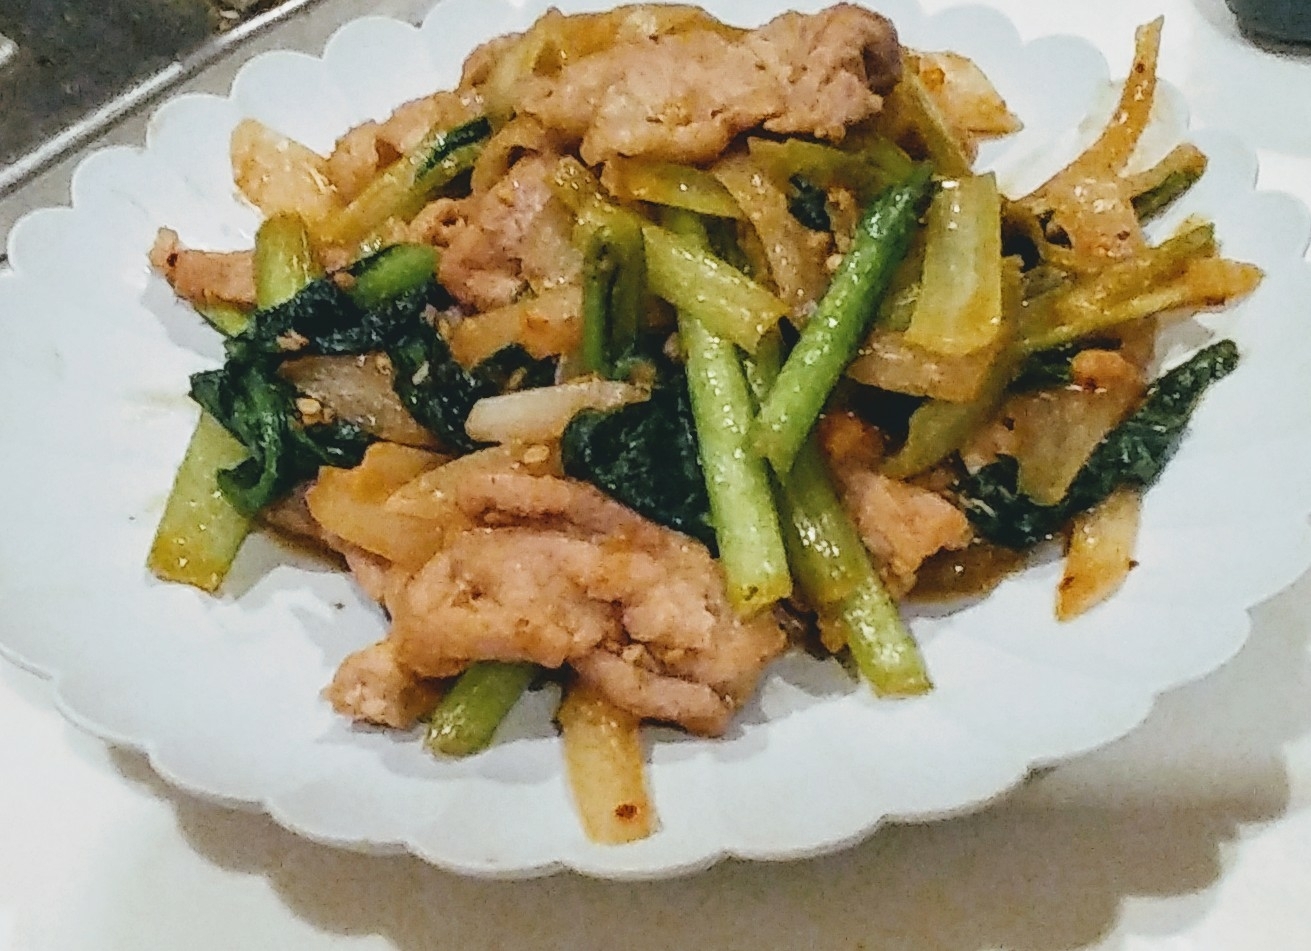 小松菜と豚肉のピリ辛炒め